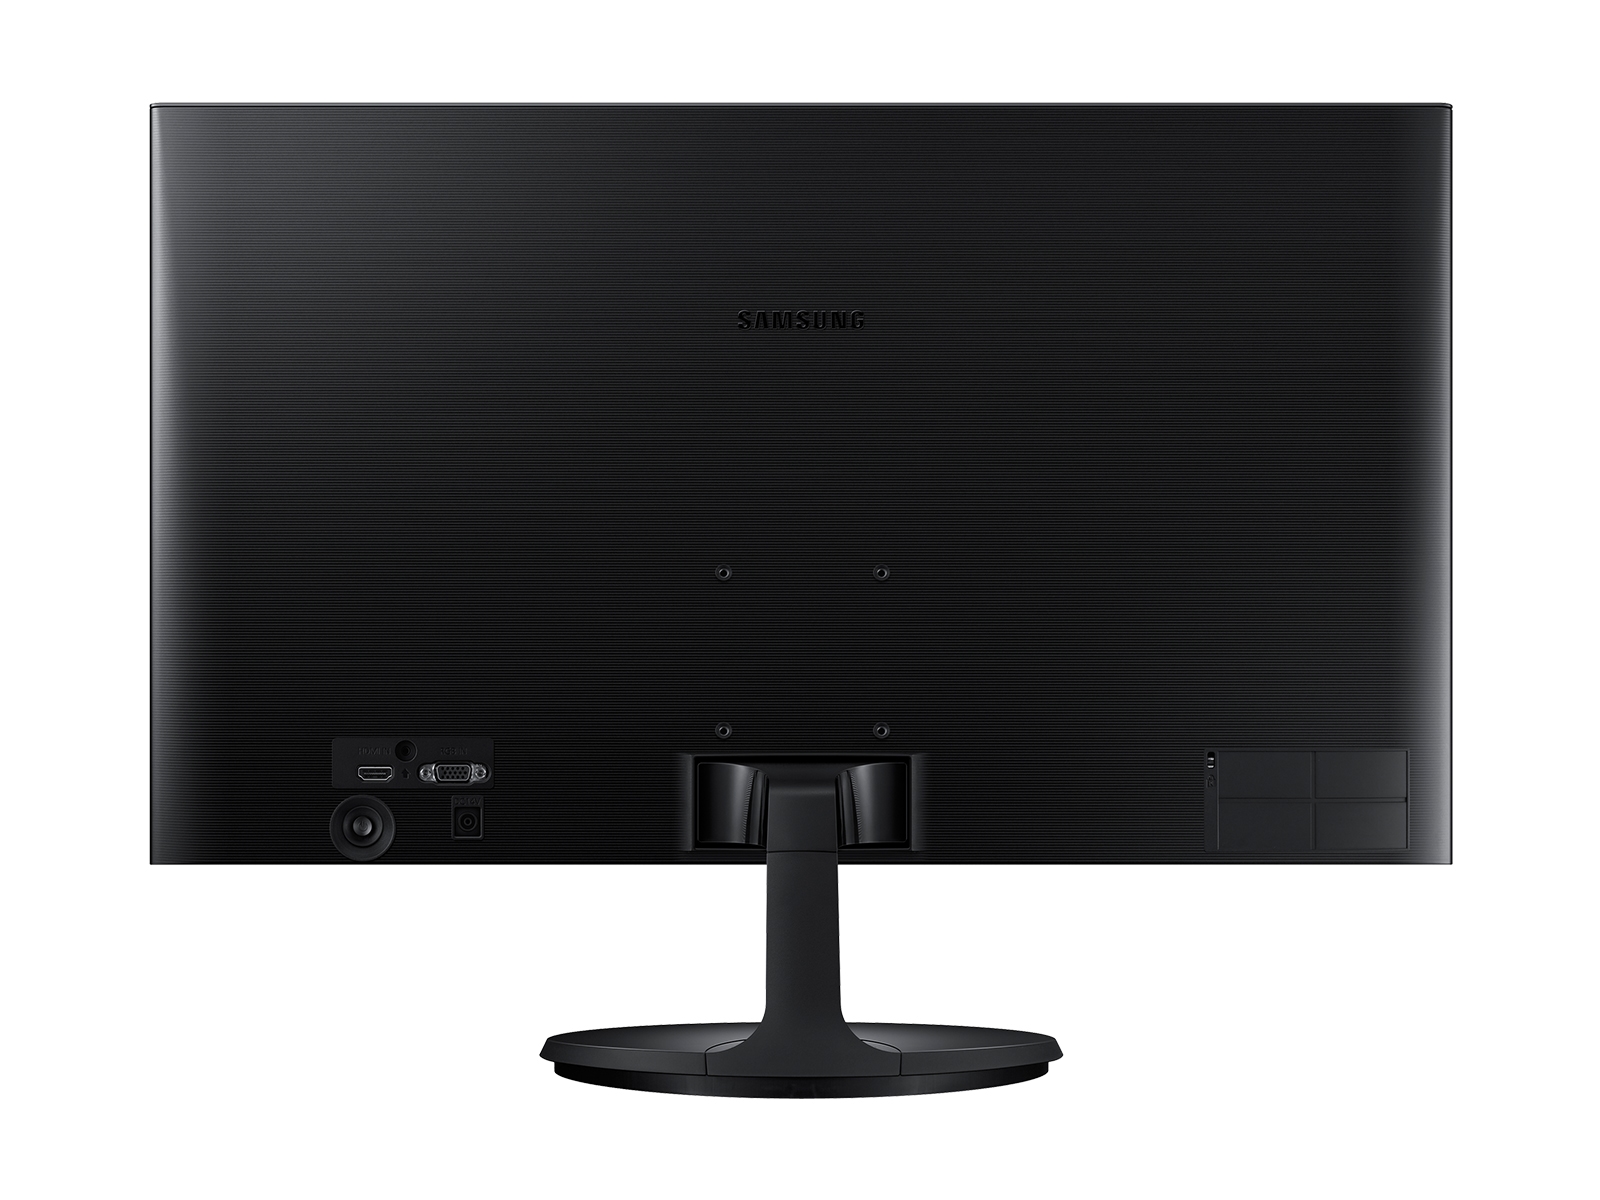 SF354 LED Monitors - LS24F354FHNXZA | Samsung US